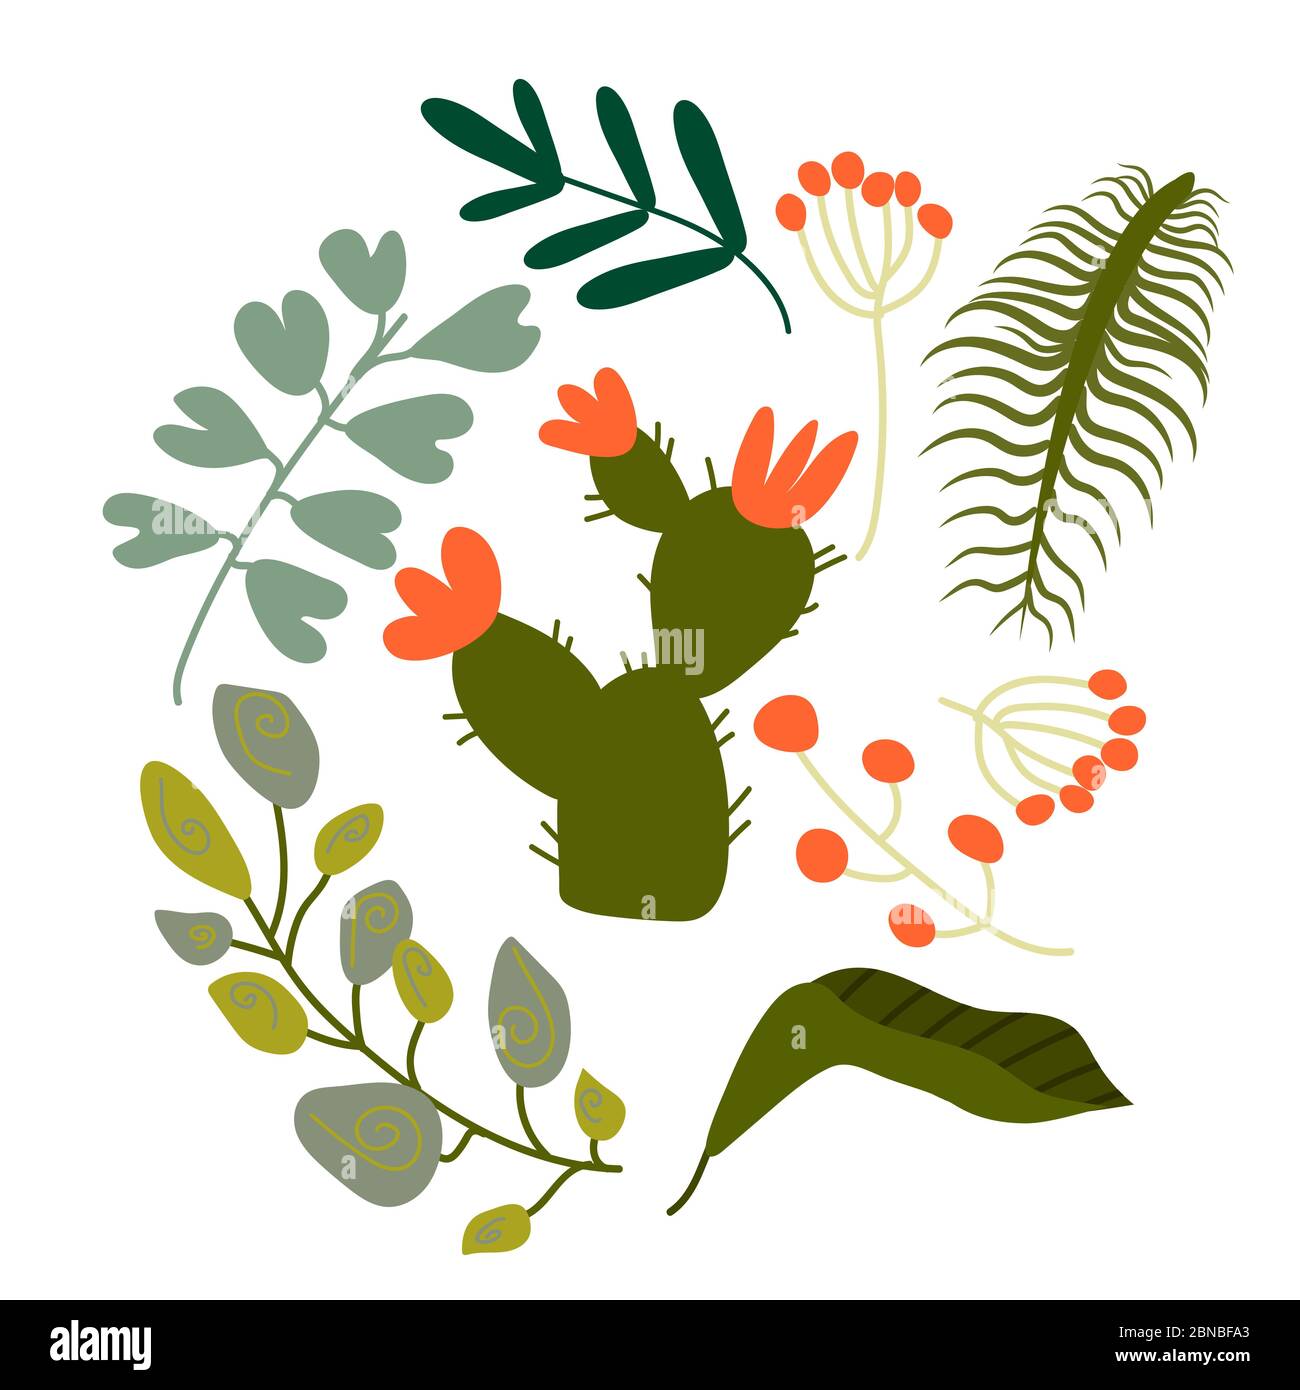 Muster-Set aus vielen verschiedenen grünen tropischen exotischen Blättern, Pflanzen mit langen Zweigen und Blumen auf weißem Hintergrund. Sammlung von abgeschlossenen und Stock Vektor